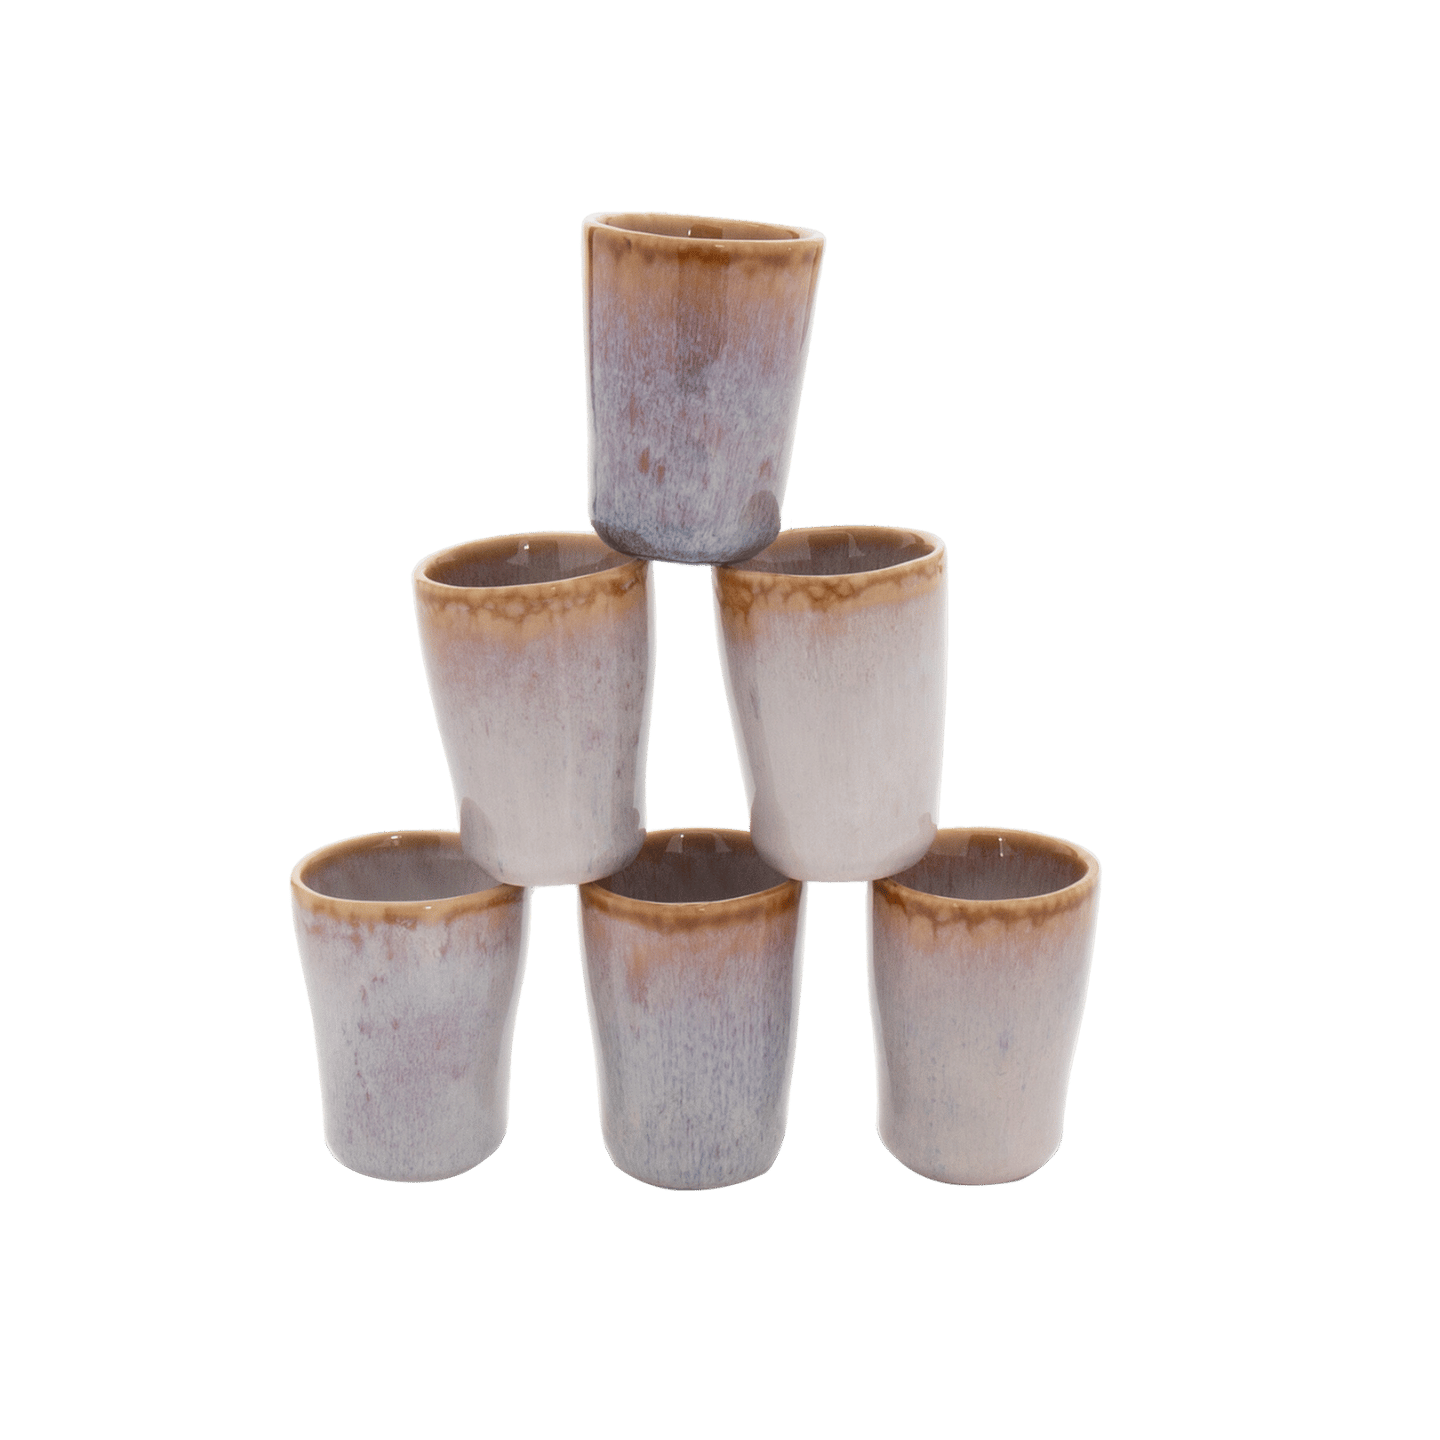 espresso tassen in klein keramik aus portugal